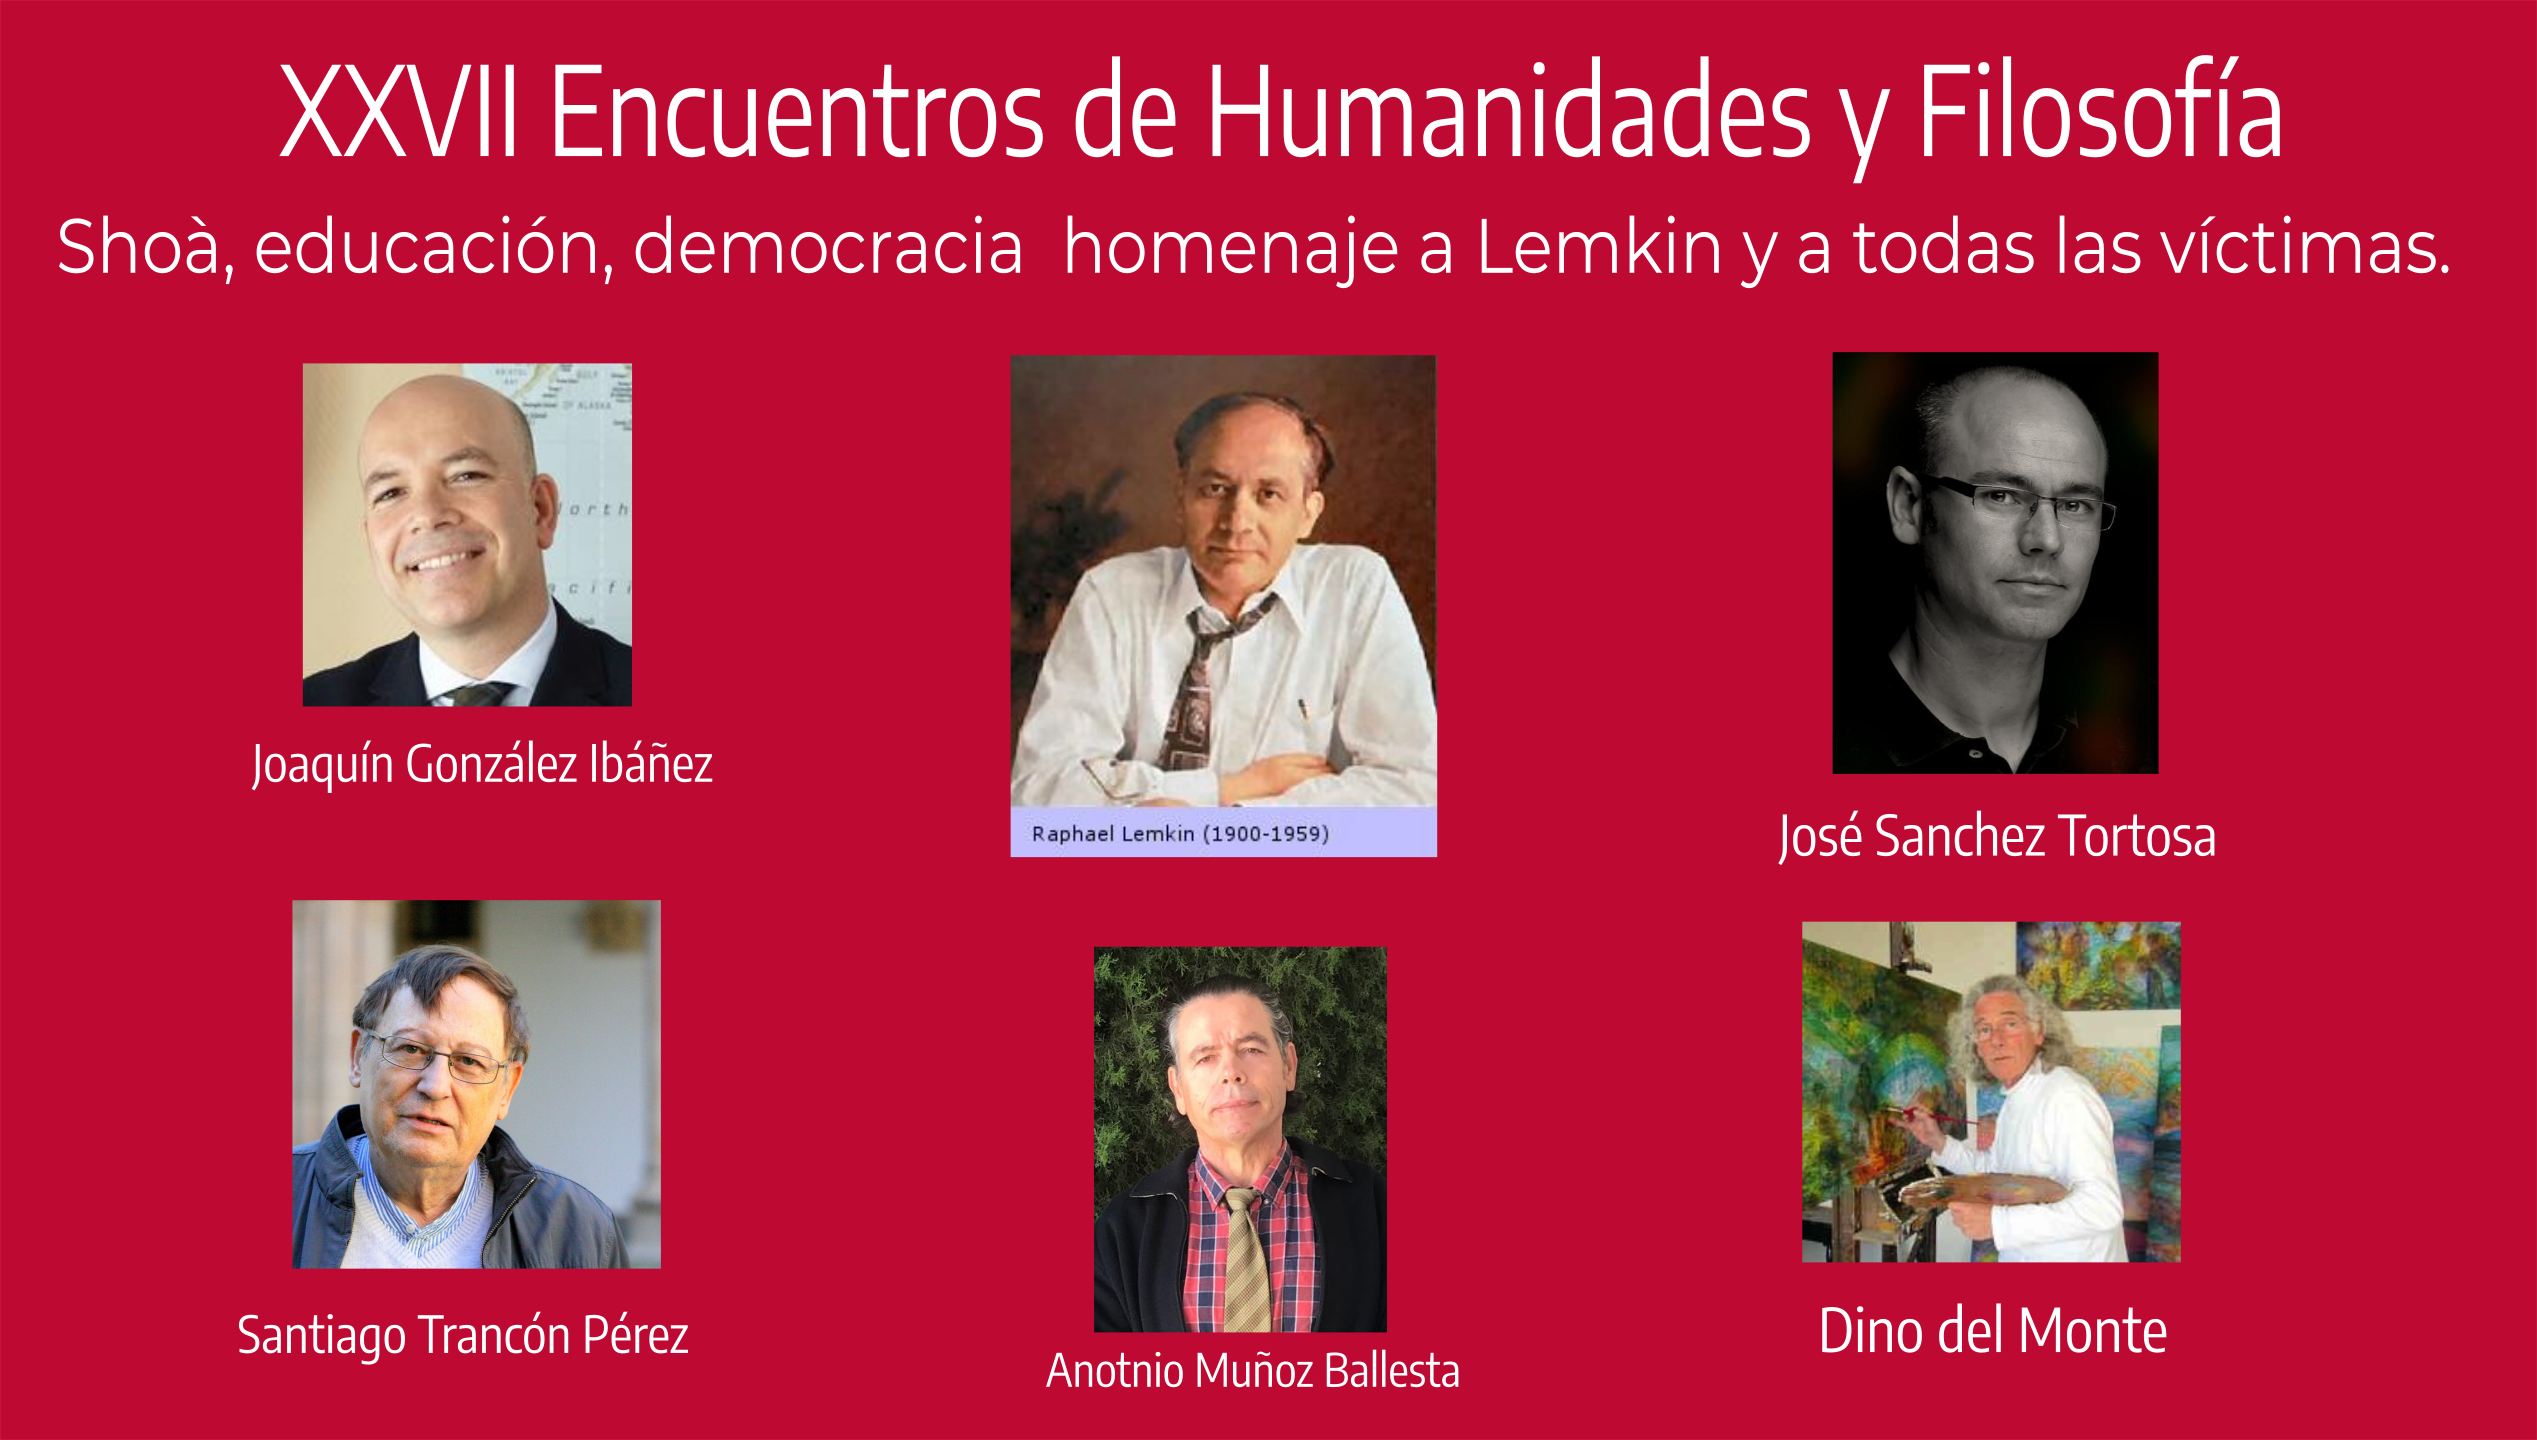 XXVII Encuentros de Humanidades y Filosfofía, Shoá, educación y democracia: homenaje a Lemkin.